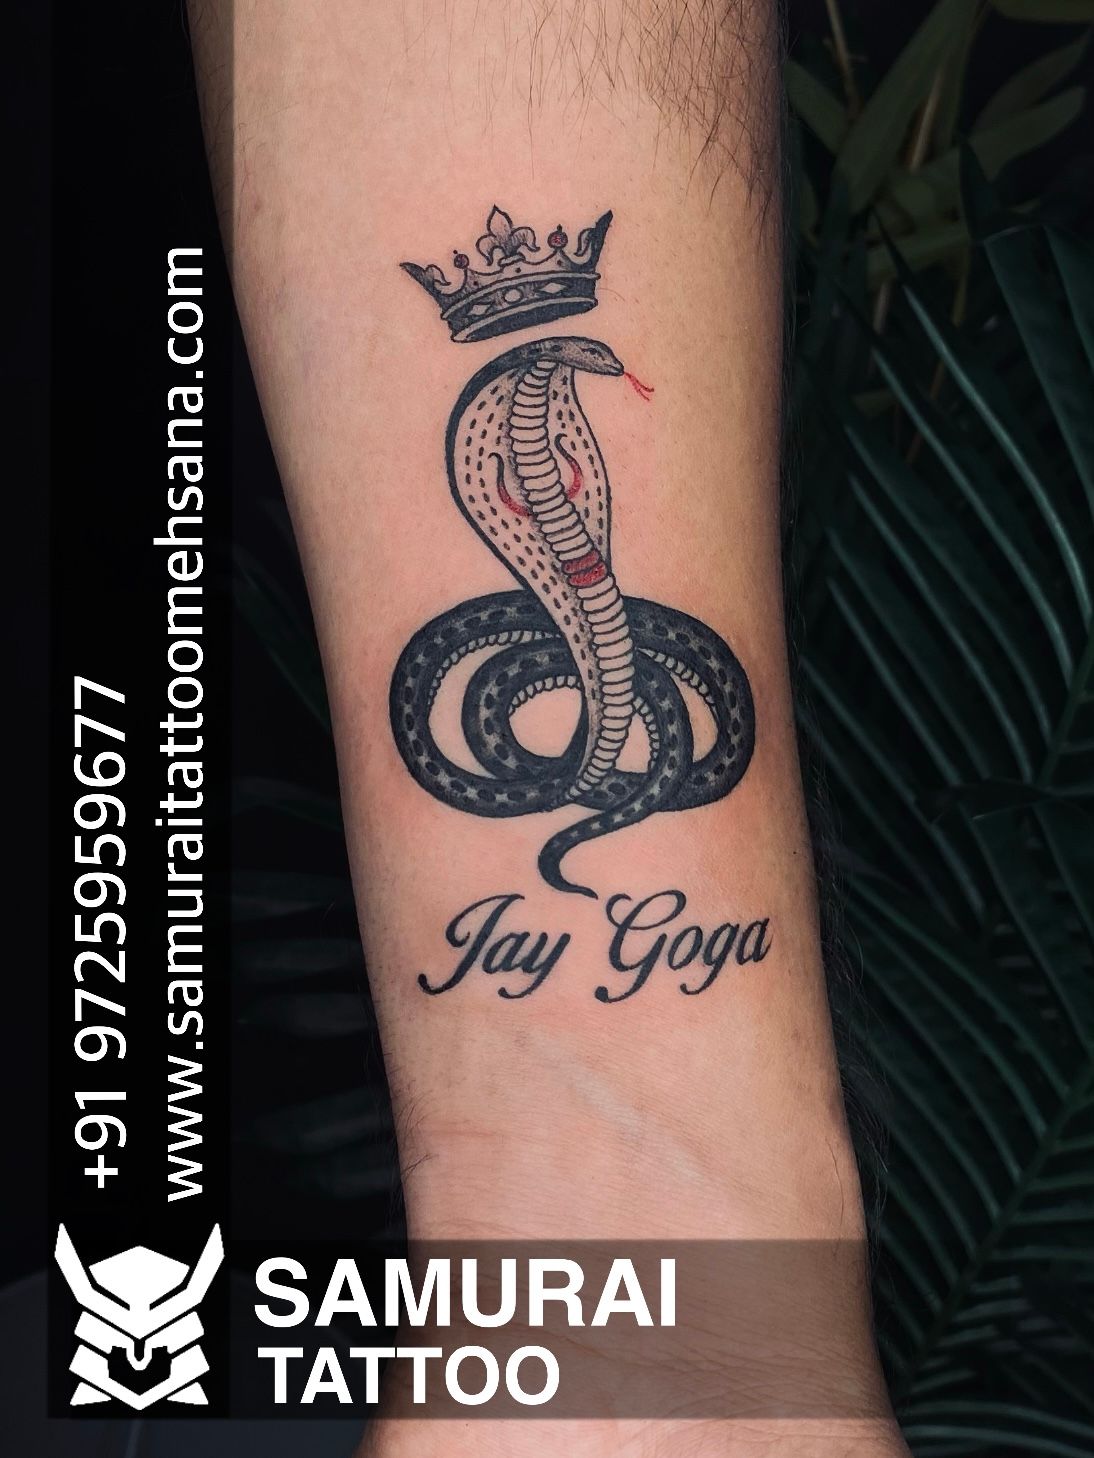 Jay Goga with crown tattoo | Crown tattoo, Tattoos, Jesus fish tattoo